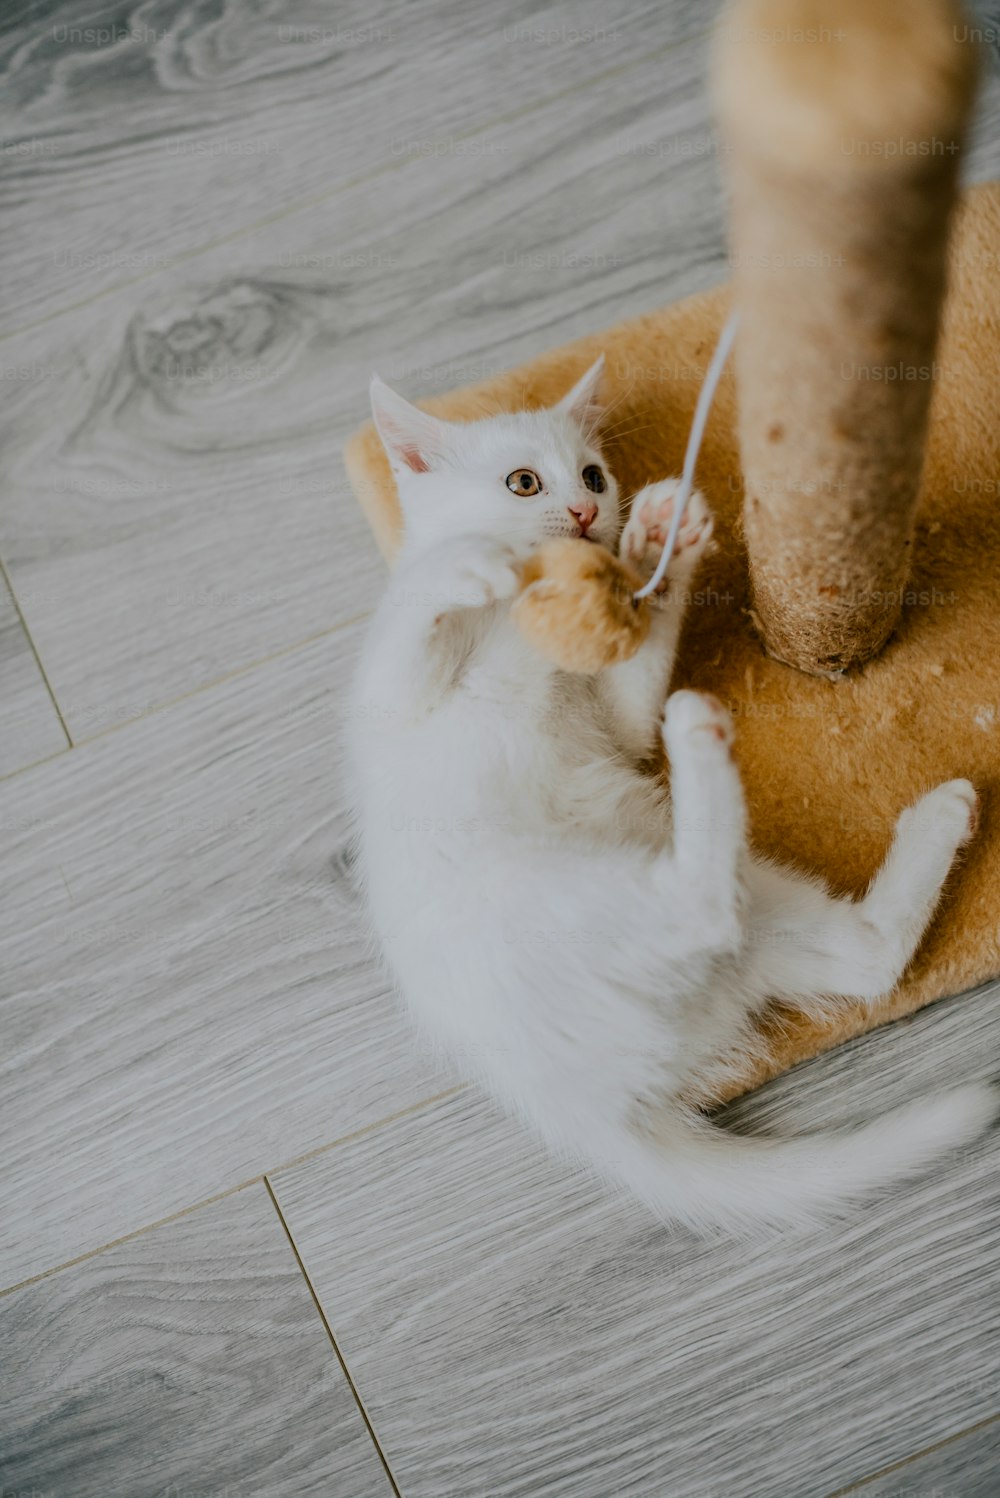 um gato brincando com um brinquedo no chão